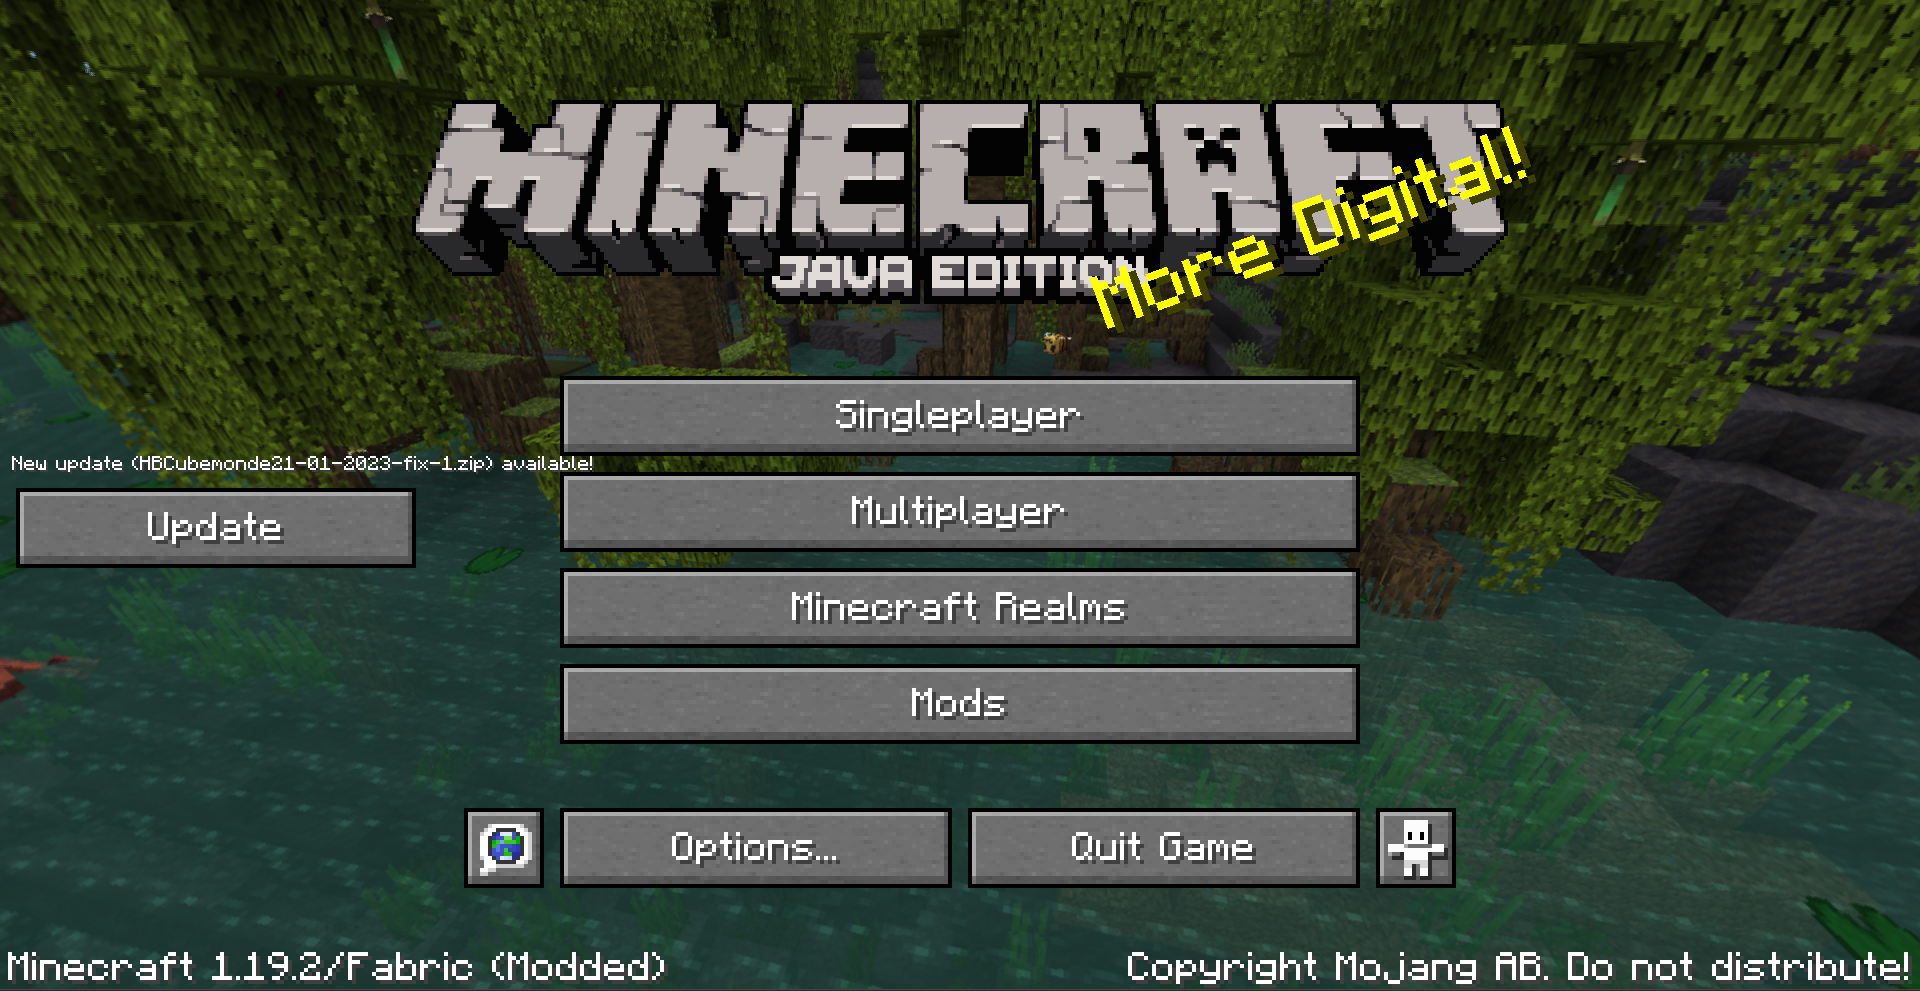 Basic main menu screen with an update button